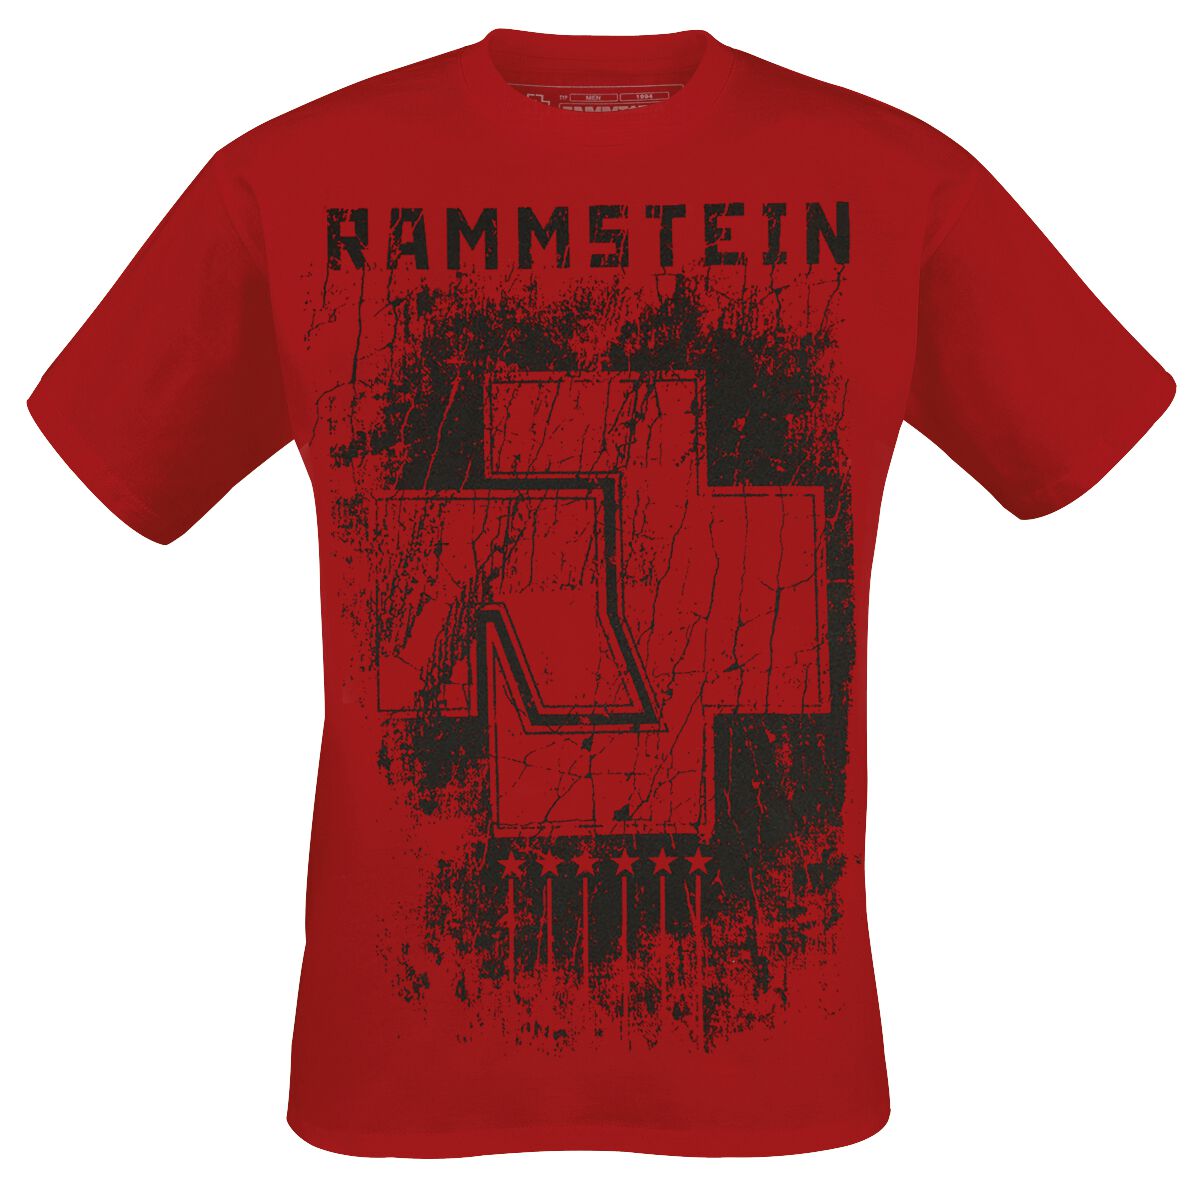 Rammstein T-Shirt - 6 Herzen - S bis XXL - für Männer - Größe XL - rot  - Lizenziertes Merchandise!